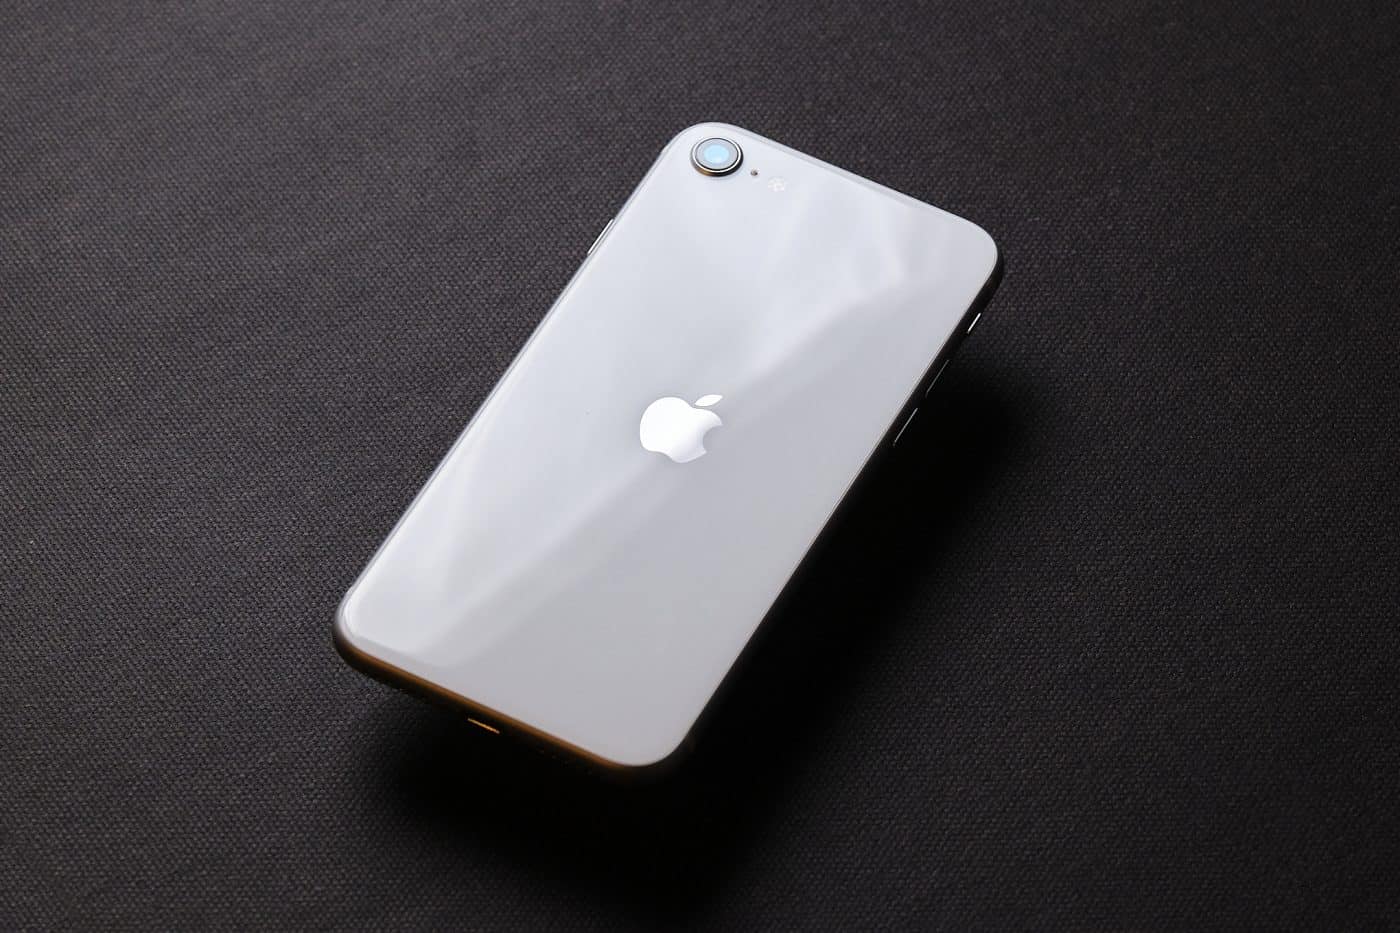 Đánh giá iPhone SE 2020 - Sự lựa chọn hoàn hảo cho những ai yêu thích sự đơn giản, nhỏ gọn